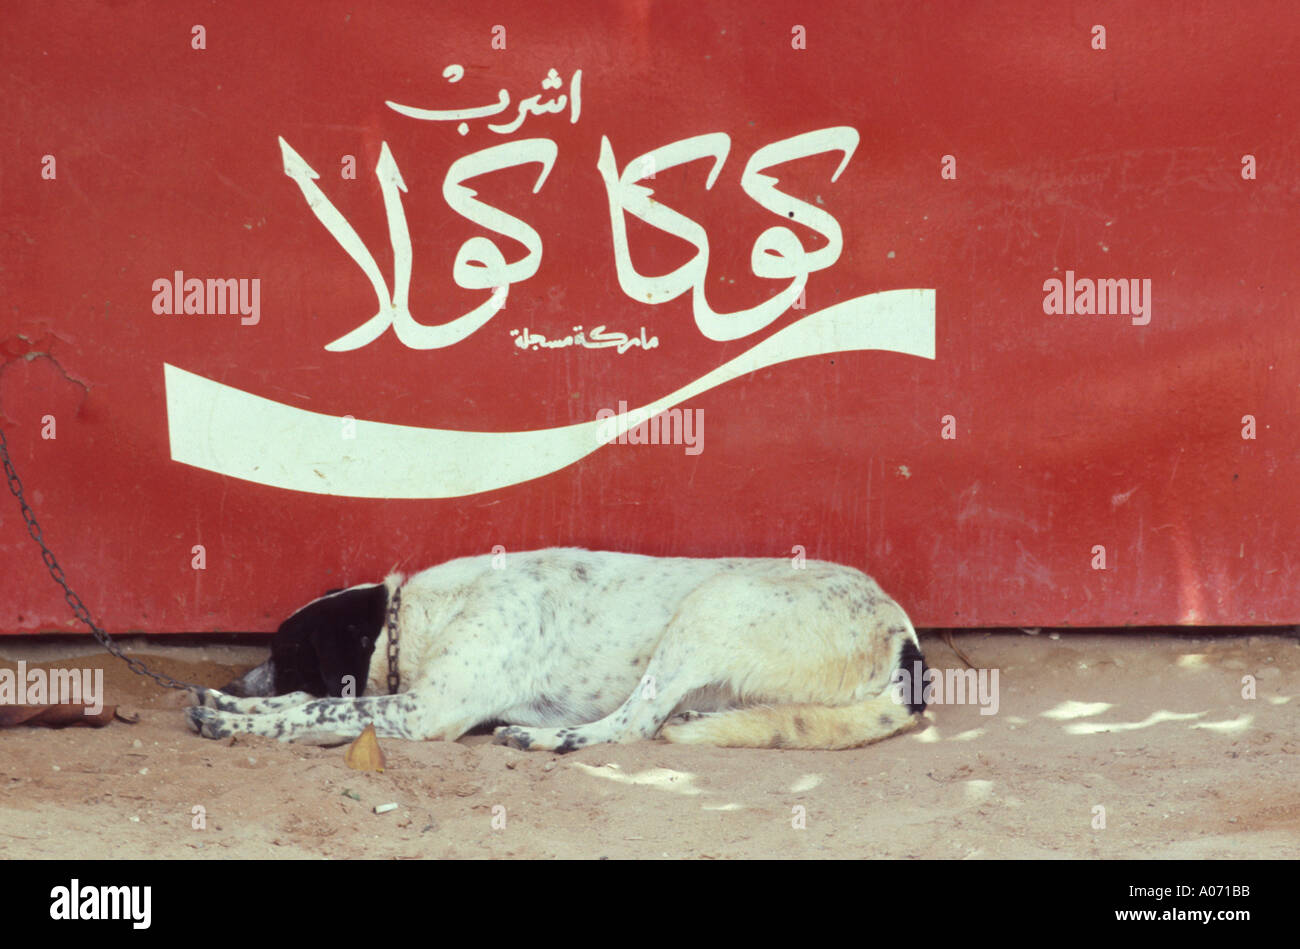 Chien devant le signe Coca Cola en arabe, Oulidia, Maroc Banque D'Images